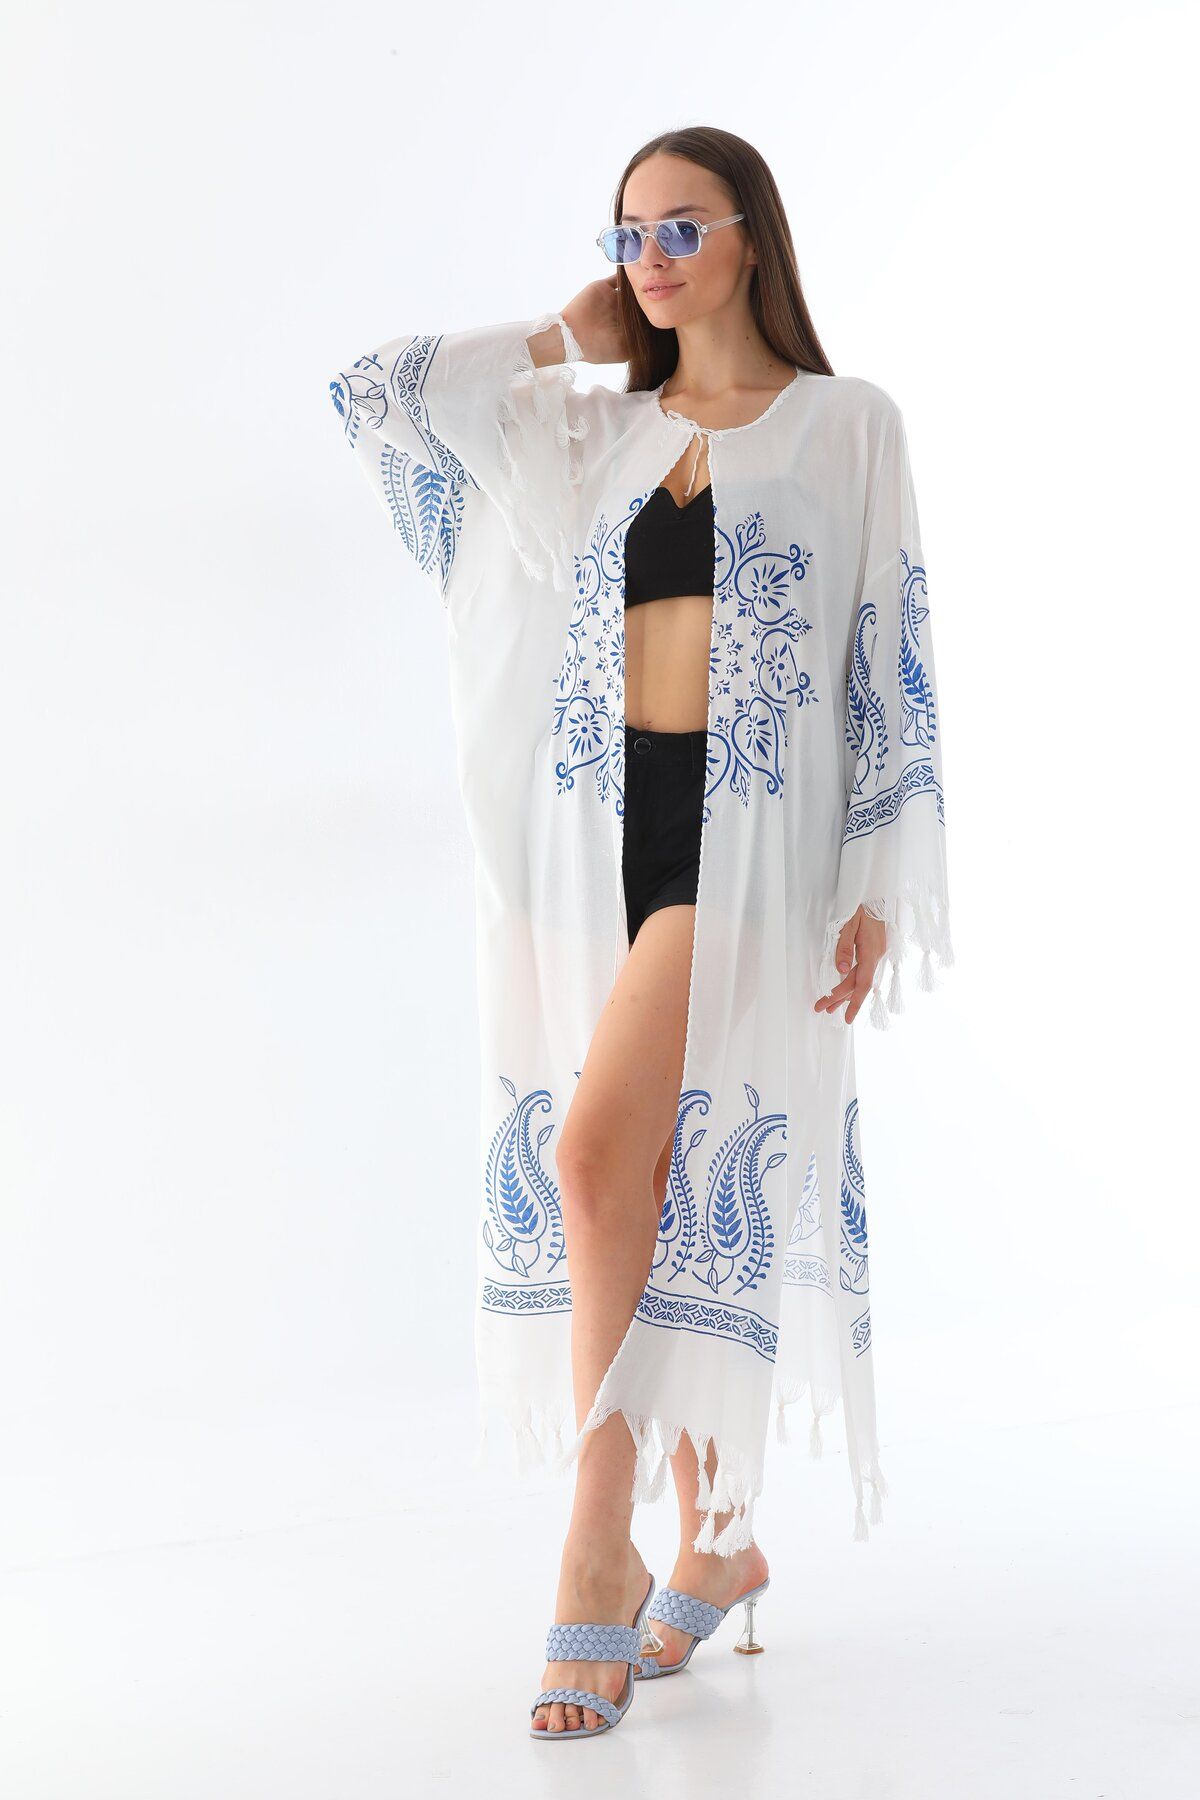 Arden Beyaz Kaftan Pareo, Pamuk Keten Doğal Kumaş Bikini & Mayo Üstü, Yaz Parti Plaj Giyim,Festival Kimono